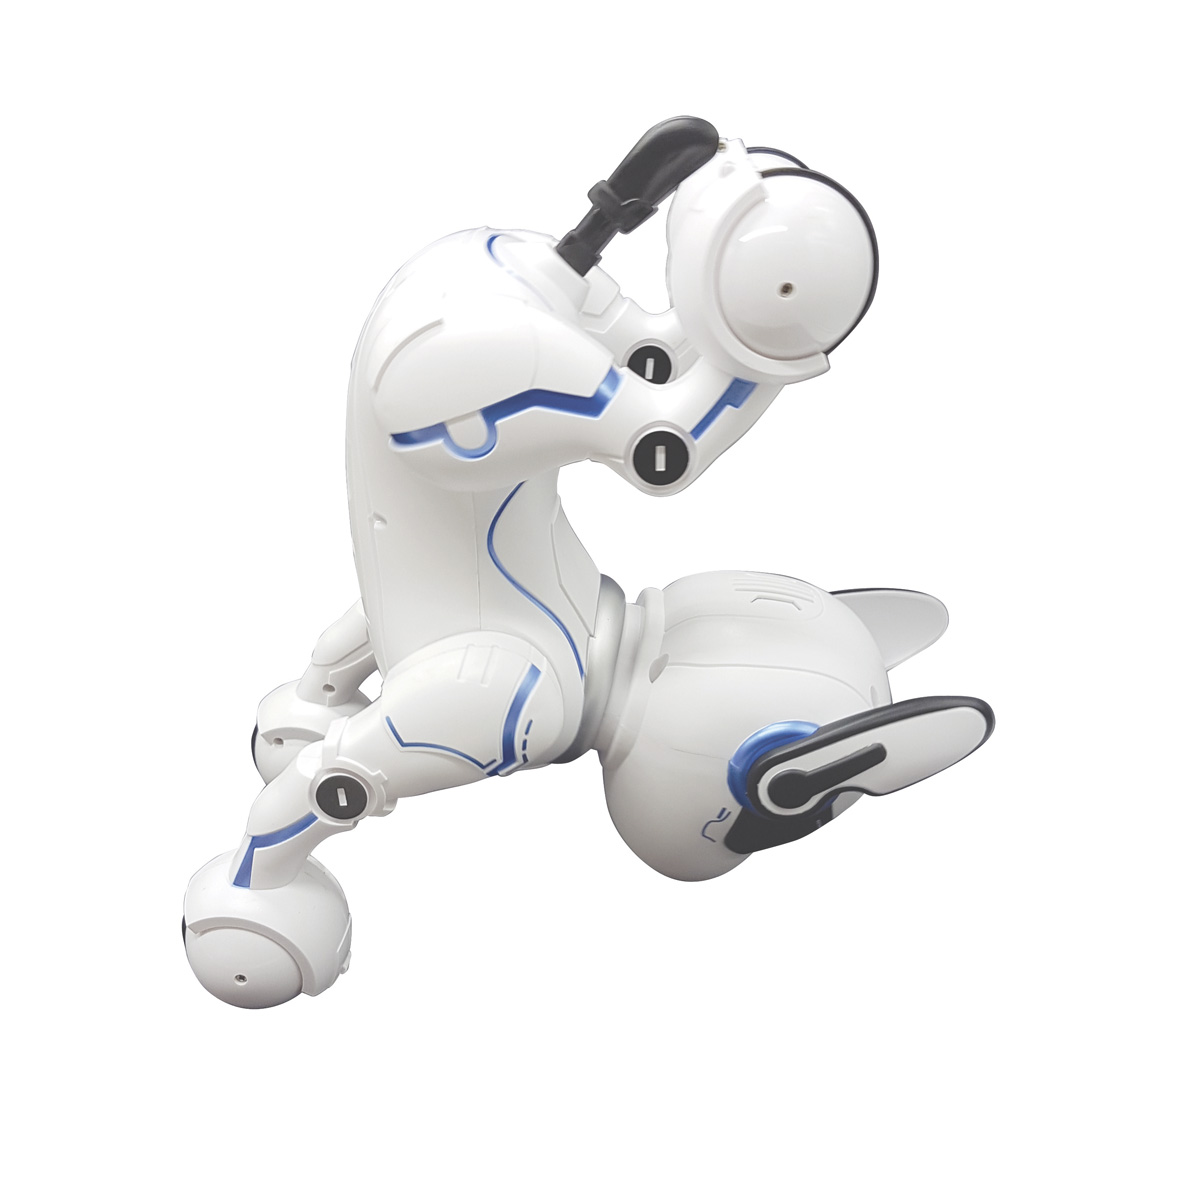 LEXIBOOK POWER PUPPY Roboterhund Lernroboter, Schwarz/Weiß Programmierbarer